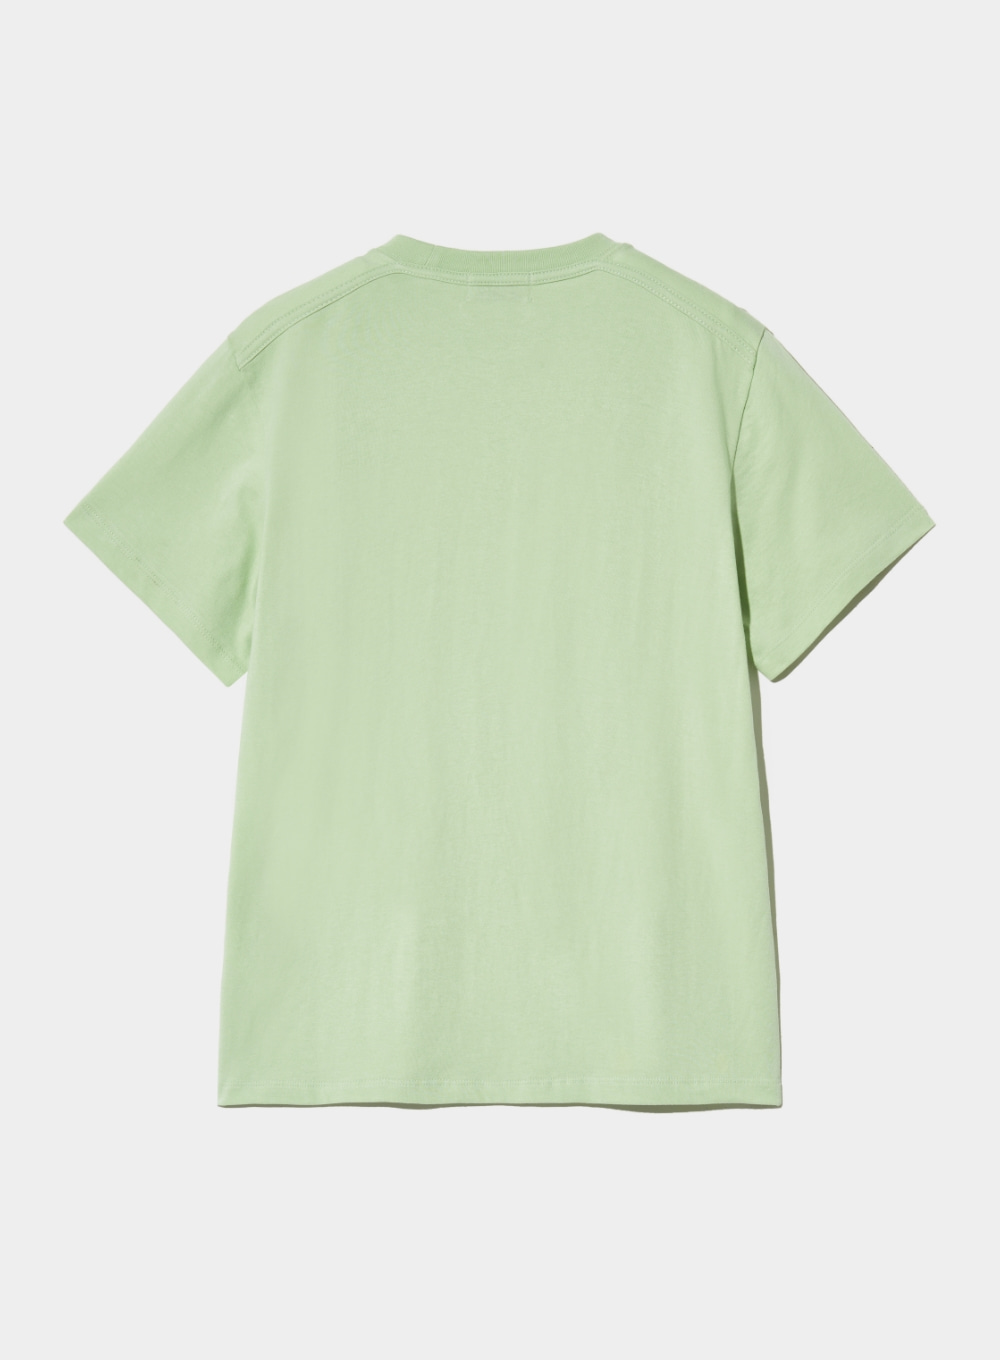 [5월 14일 예약배송] (W) Ribbon Citron Graphic T-Shirt - Celadon Mint